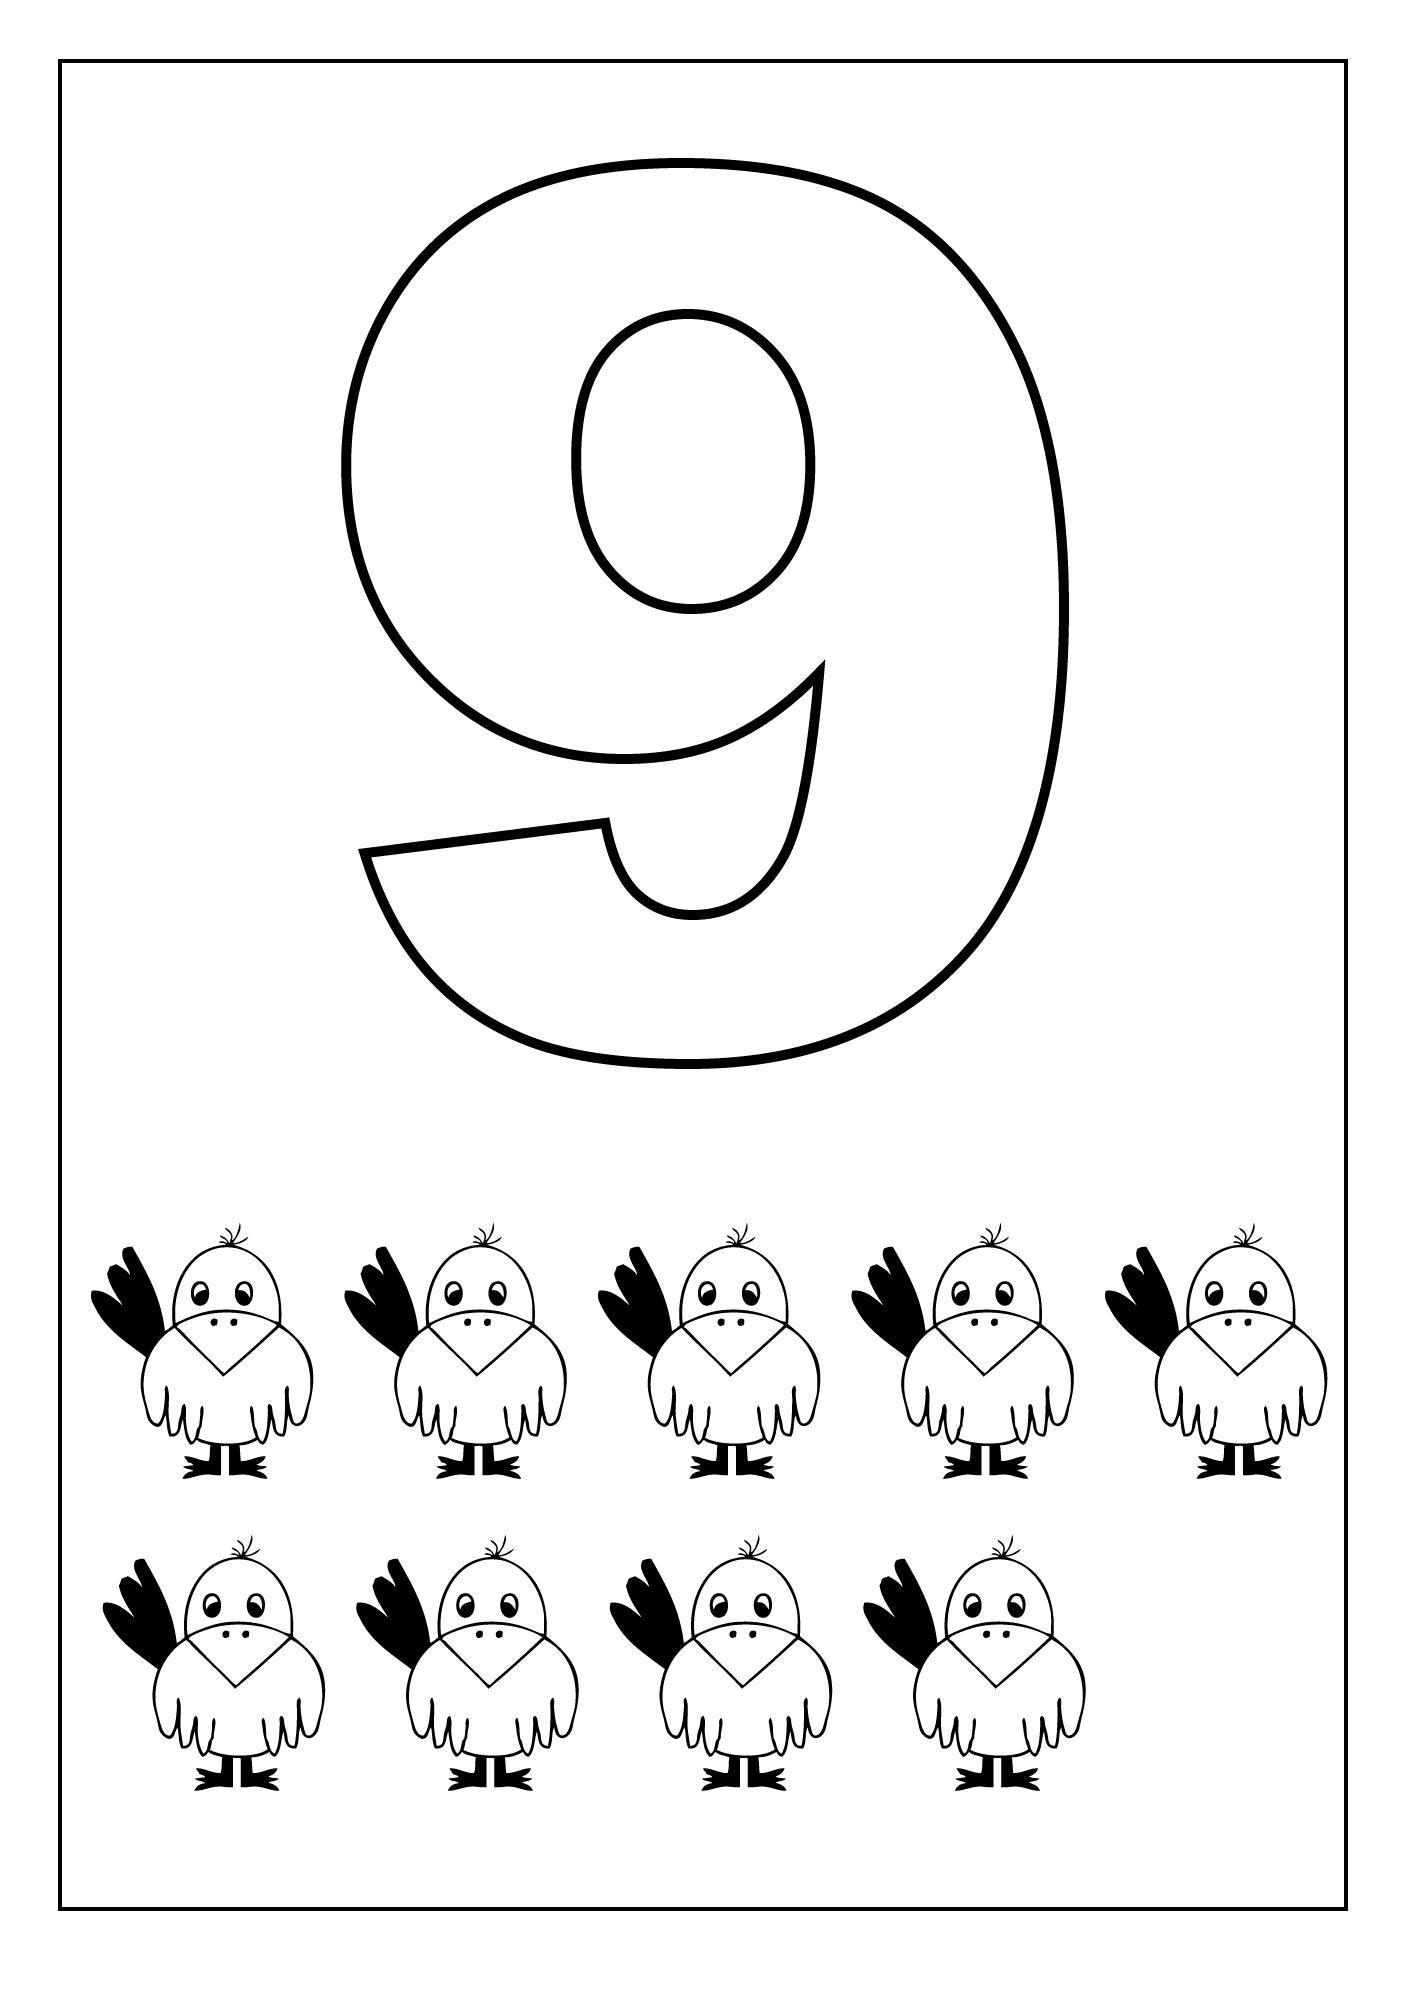 9 картинка раскраска. Цифра 9 раскраска. Раскраска цифра 9 для дошкольников. Цифра 9 раскраска для детей. Цифры раскраска для детей.